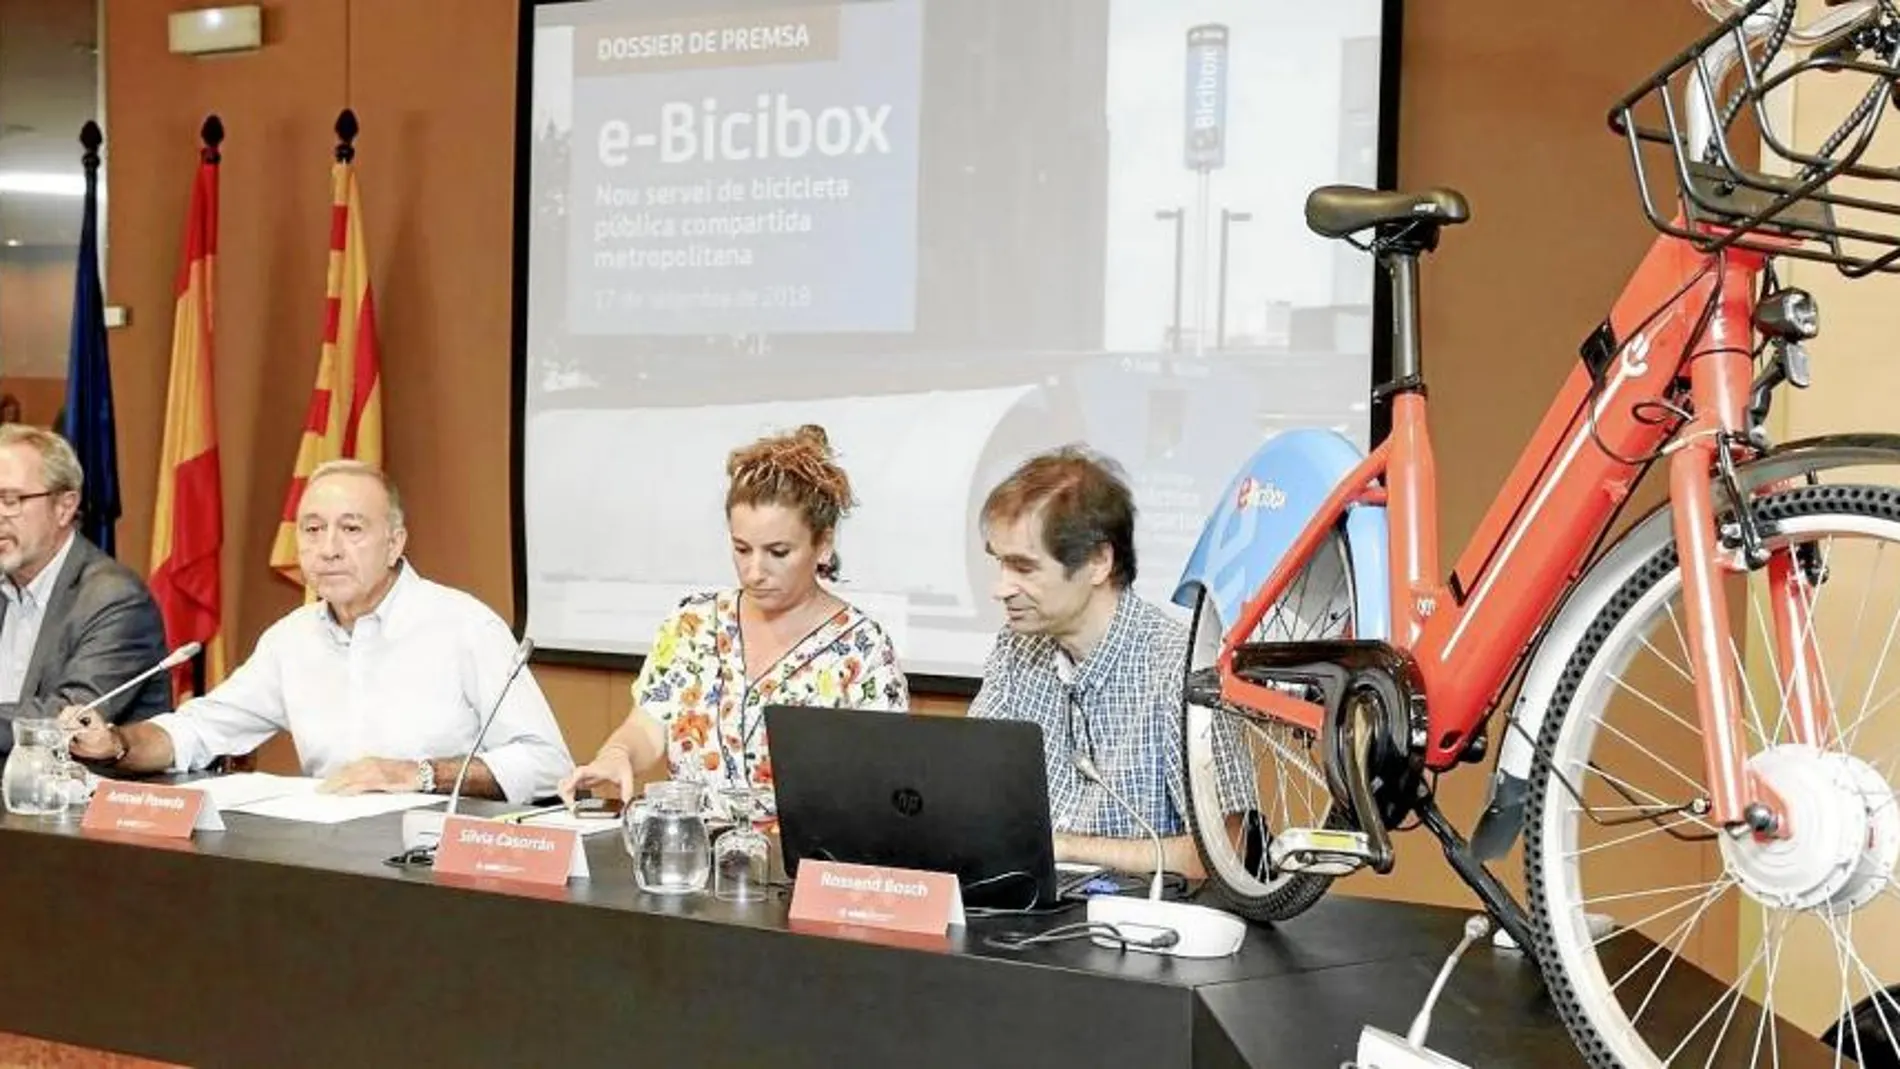 Presentación del nuevo servicio E-Bicibox